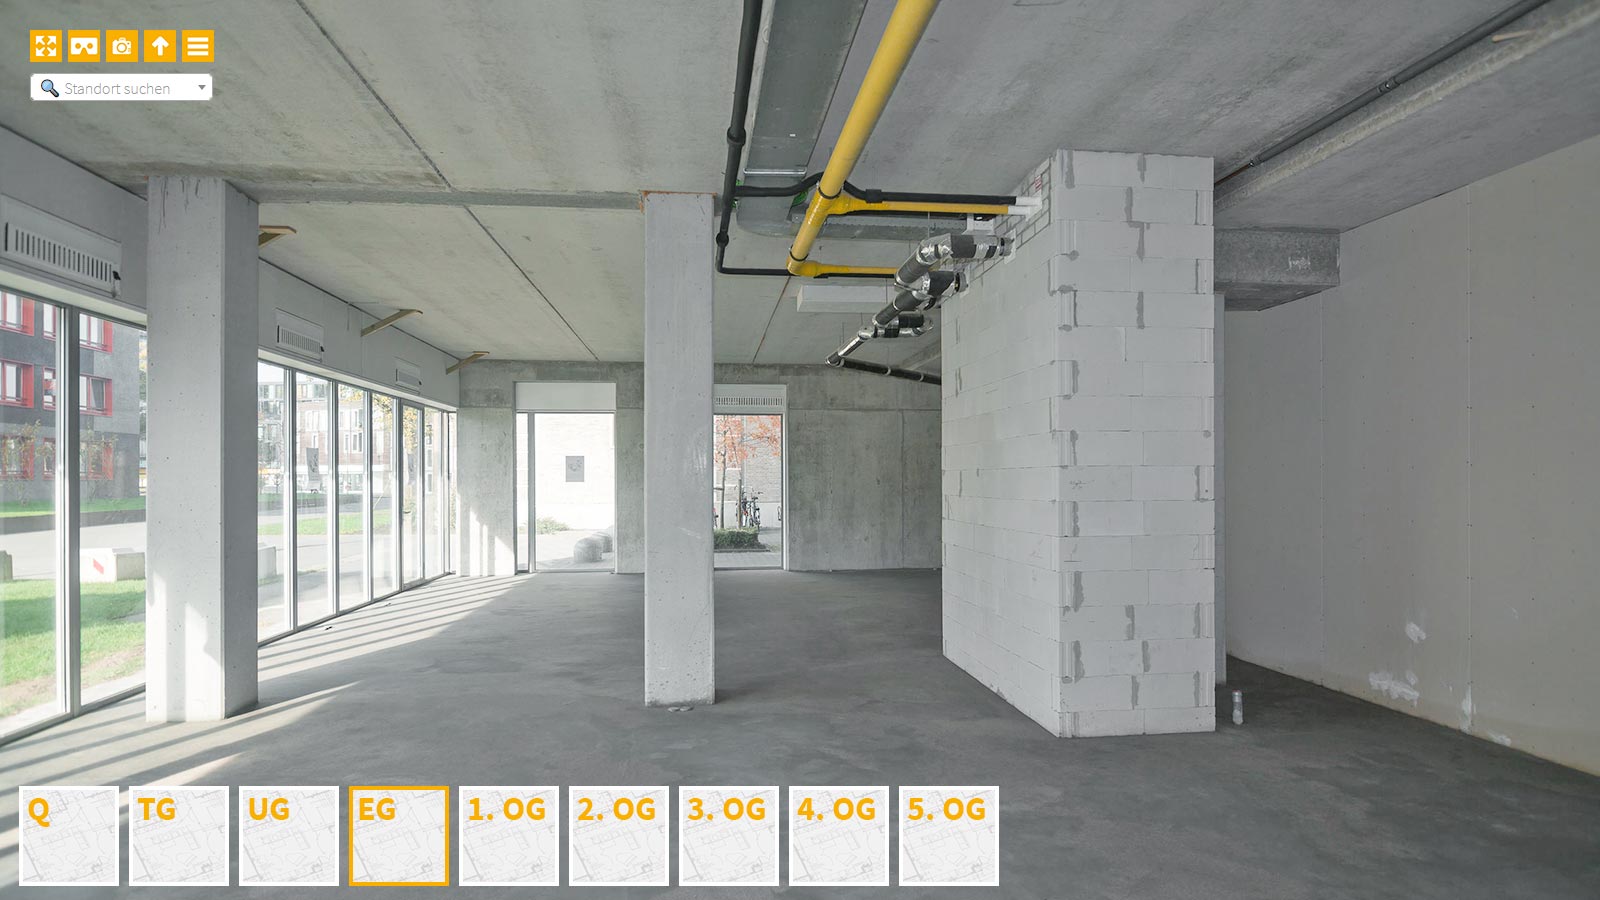 Baudokumentation 360 Grad bei gestörten Projekten in 


	


	


	


	


	


	


	


	


	


	Mönchen-Gladbach









, Bilddokumentation als virtueller Rundgang